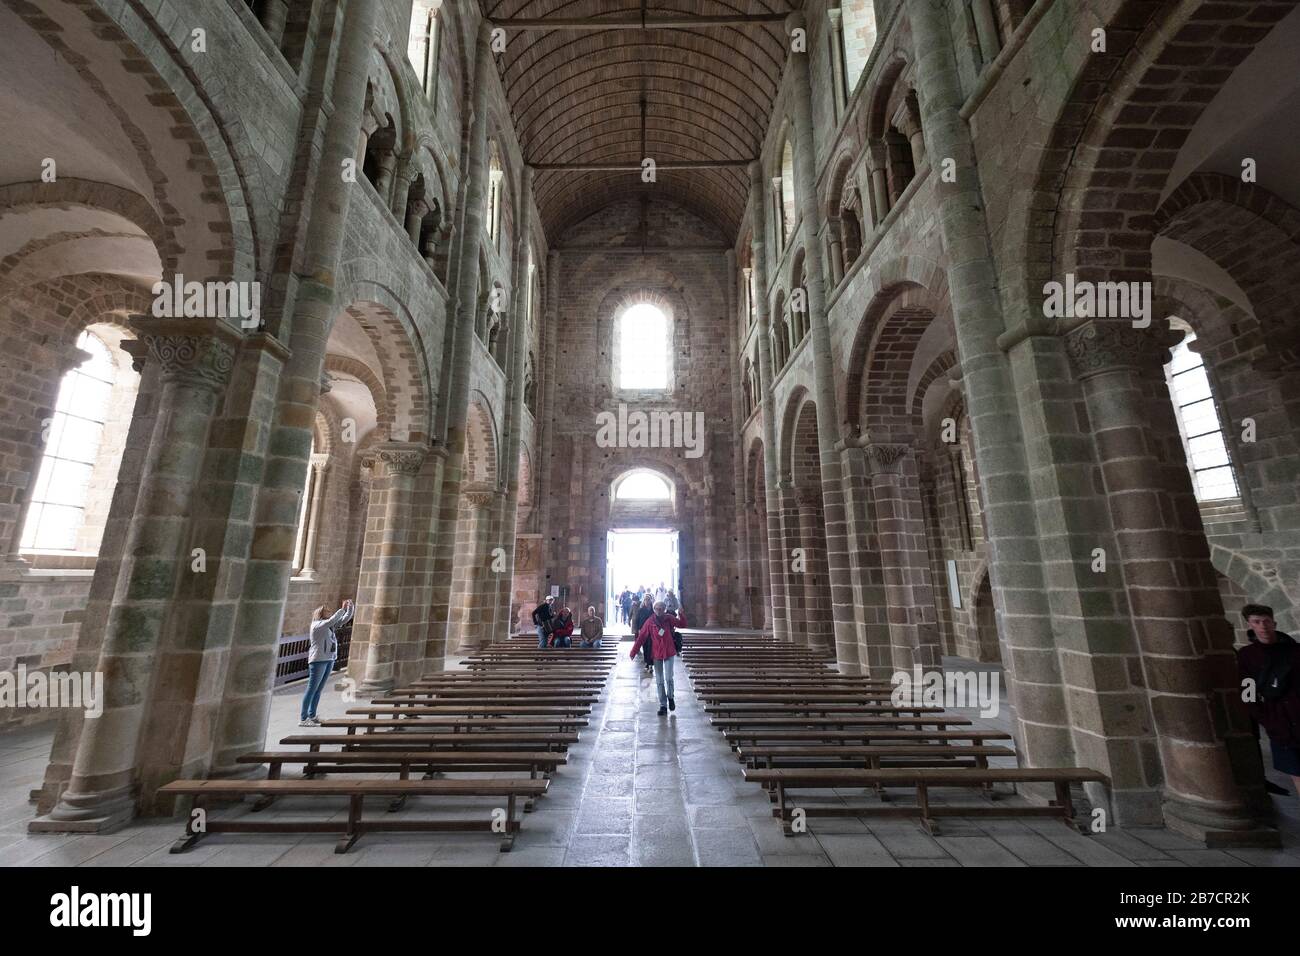 Guide touristique à la tête de son groupe à l'intérieur de la nef de l'abbaye du Mont Saint-Michel, Normandie, France, Europe Banque D'Images